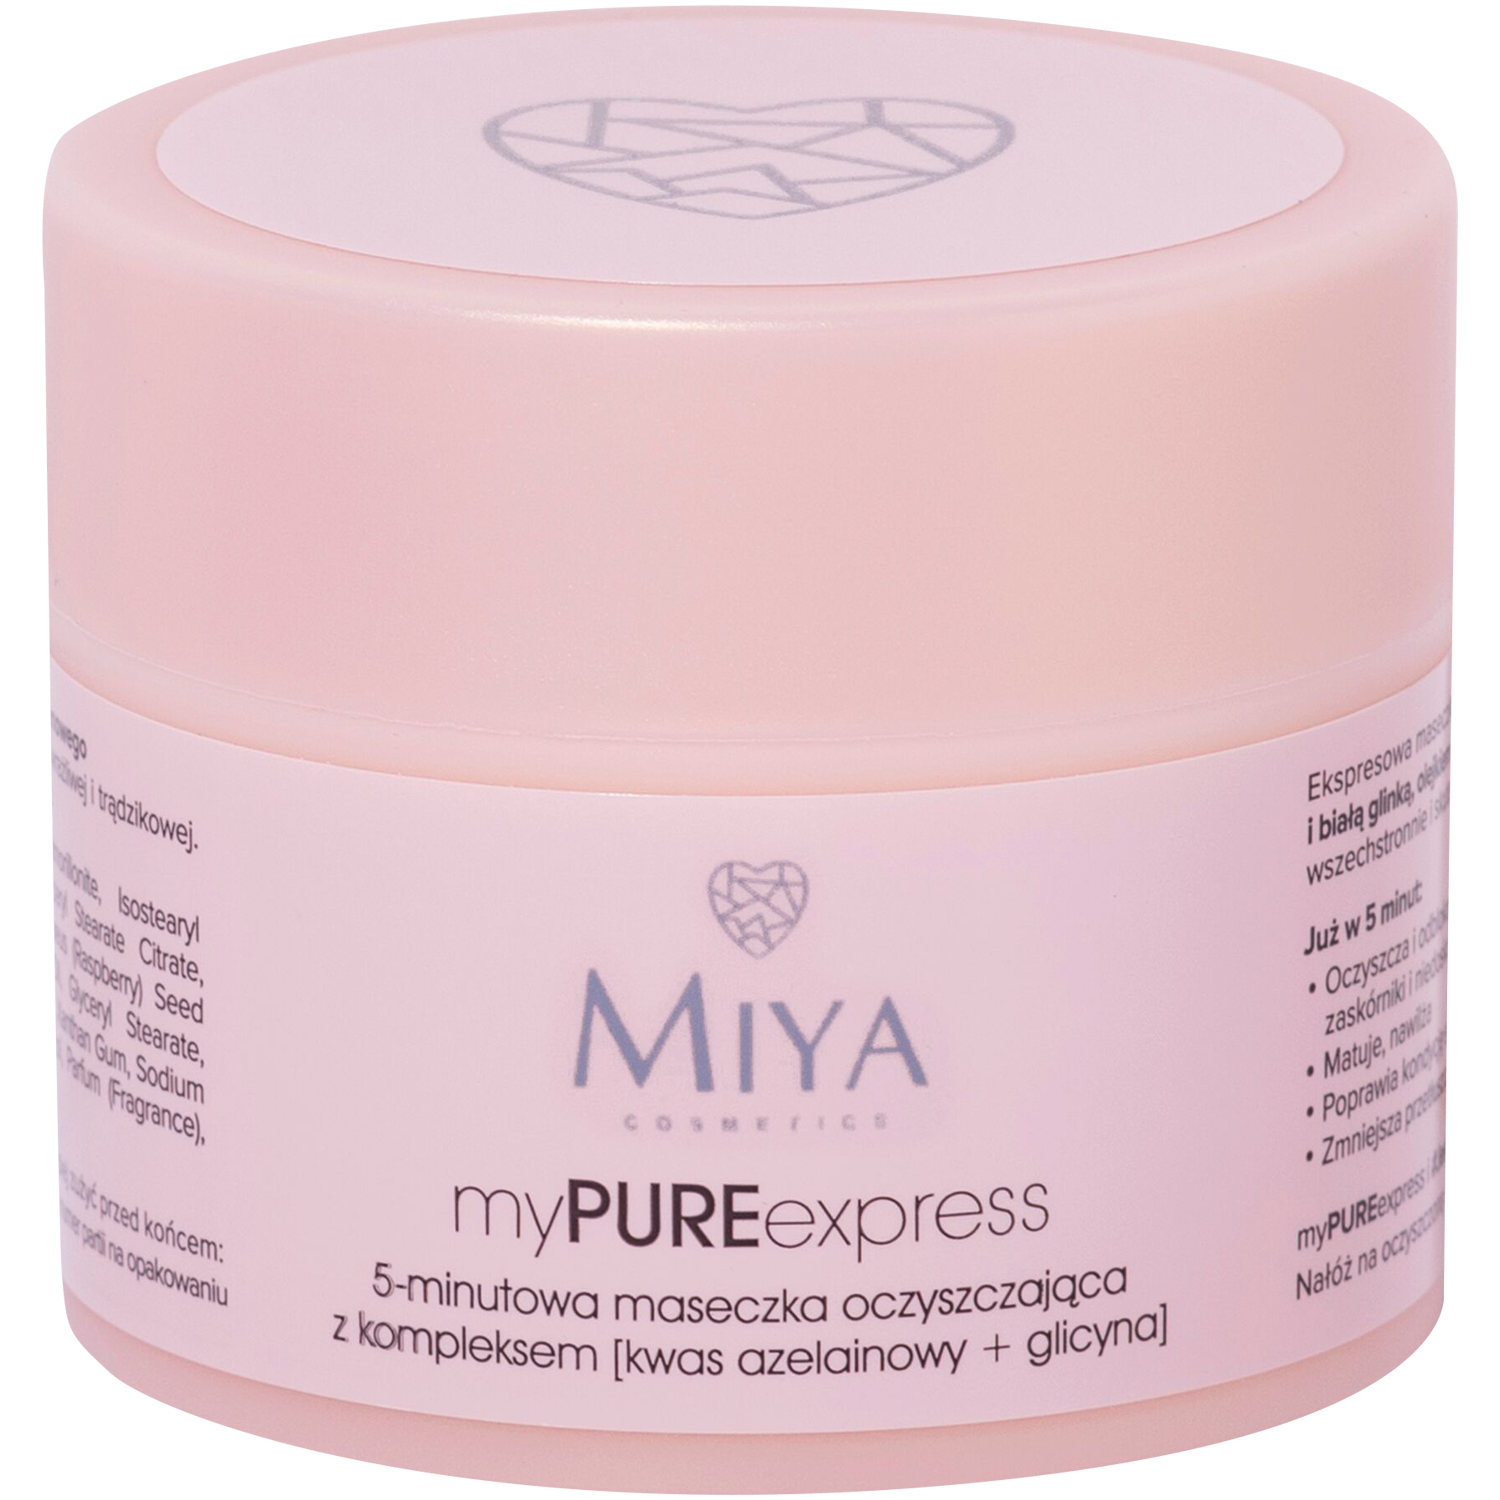 Miya Cosmetics 5-minutowa maseczka oczyszczająca z kompleksem z kwasem  azelainowy i glicyną 50g | hebe.pl